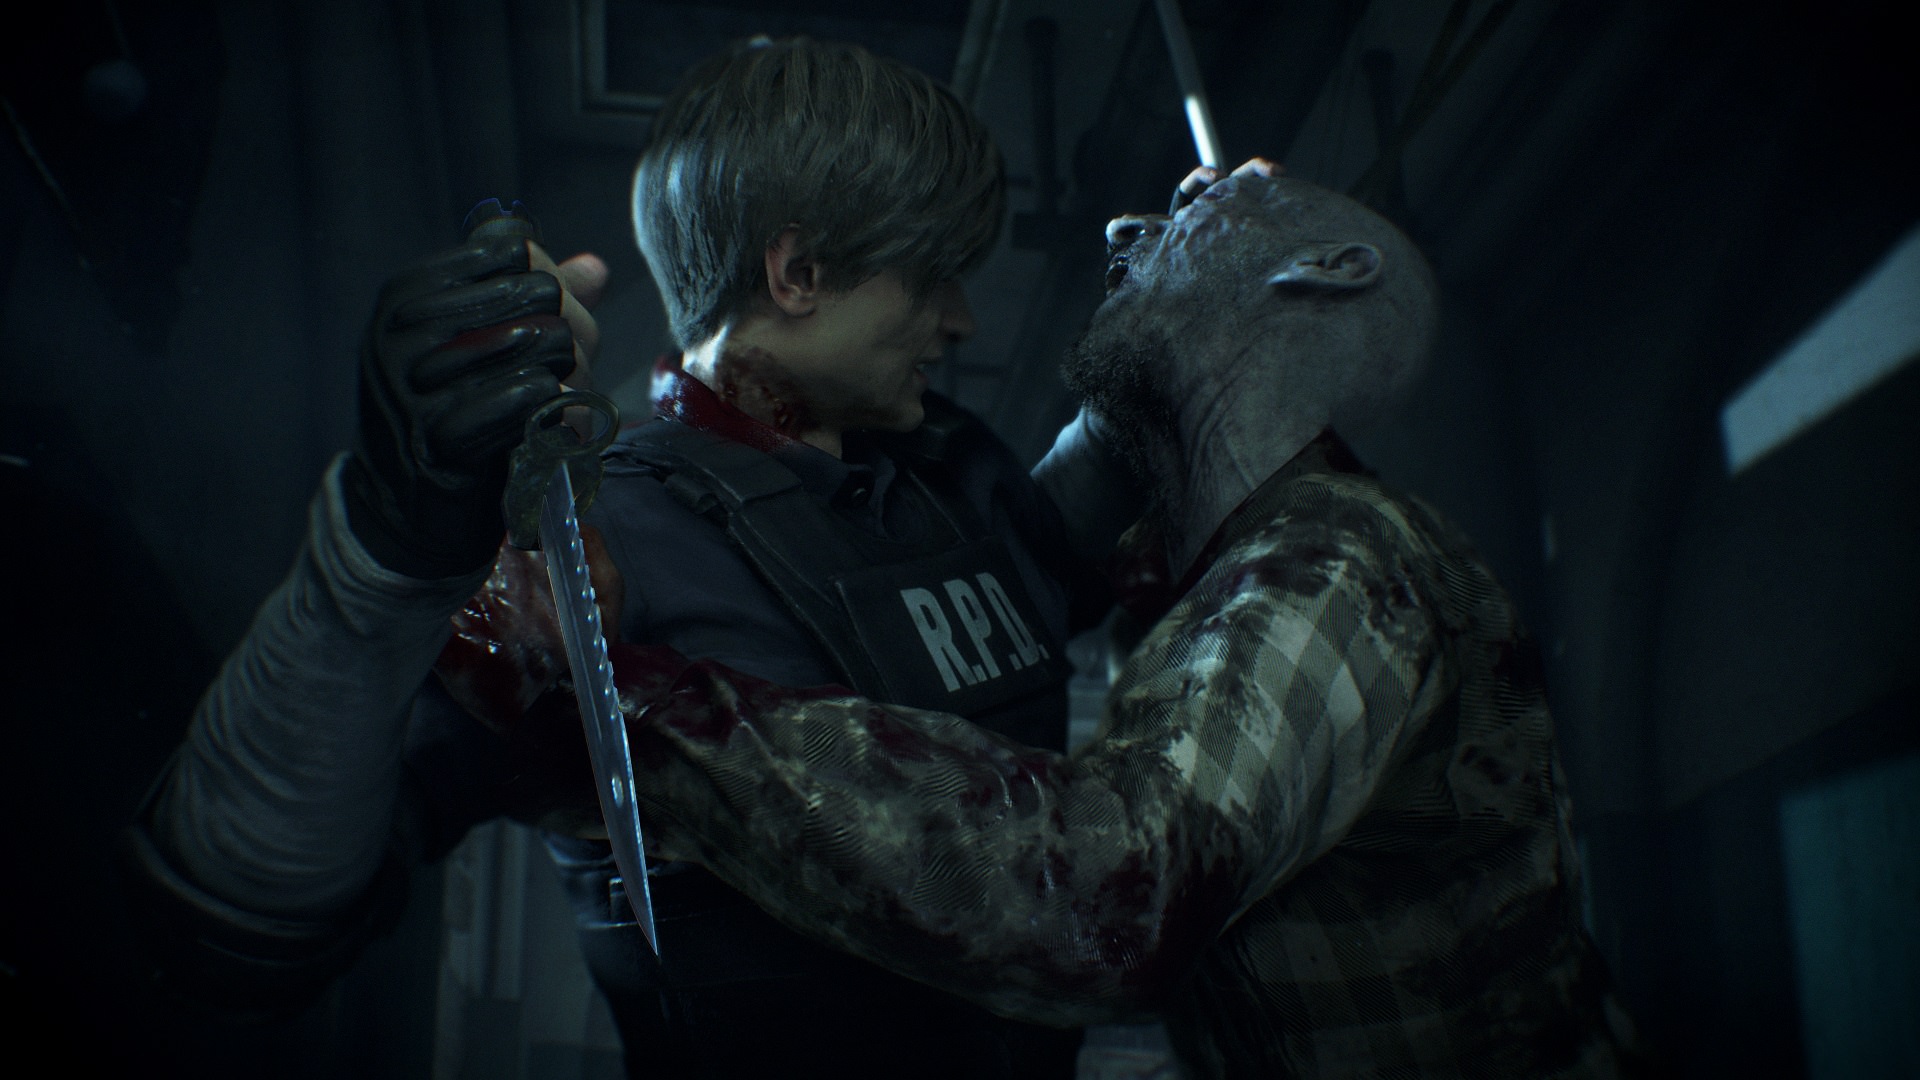 فروش ریمیک Resident Evil 2 از ۱۲.۶ میلیون نسخه گذر کرد